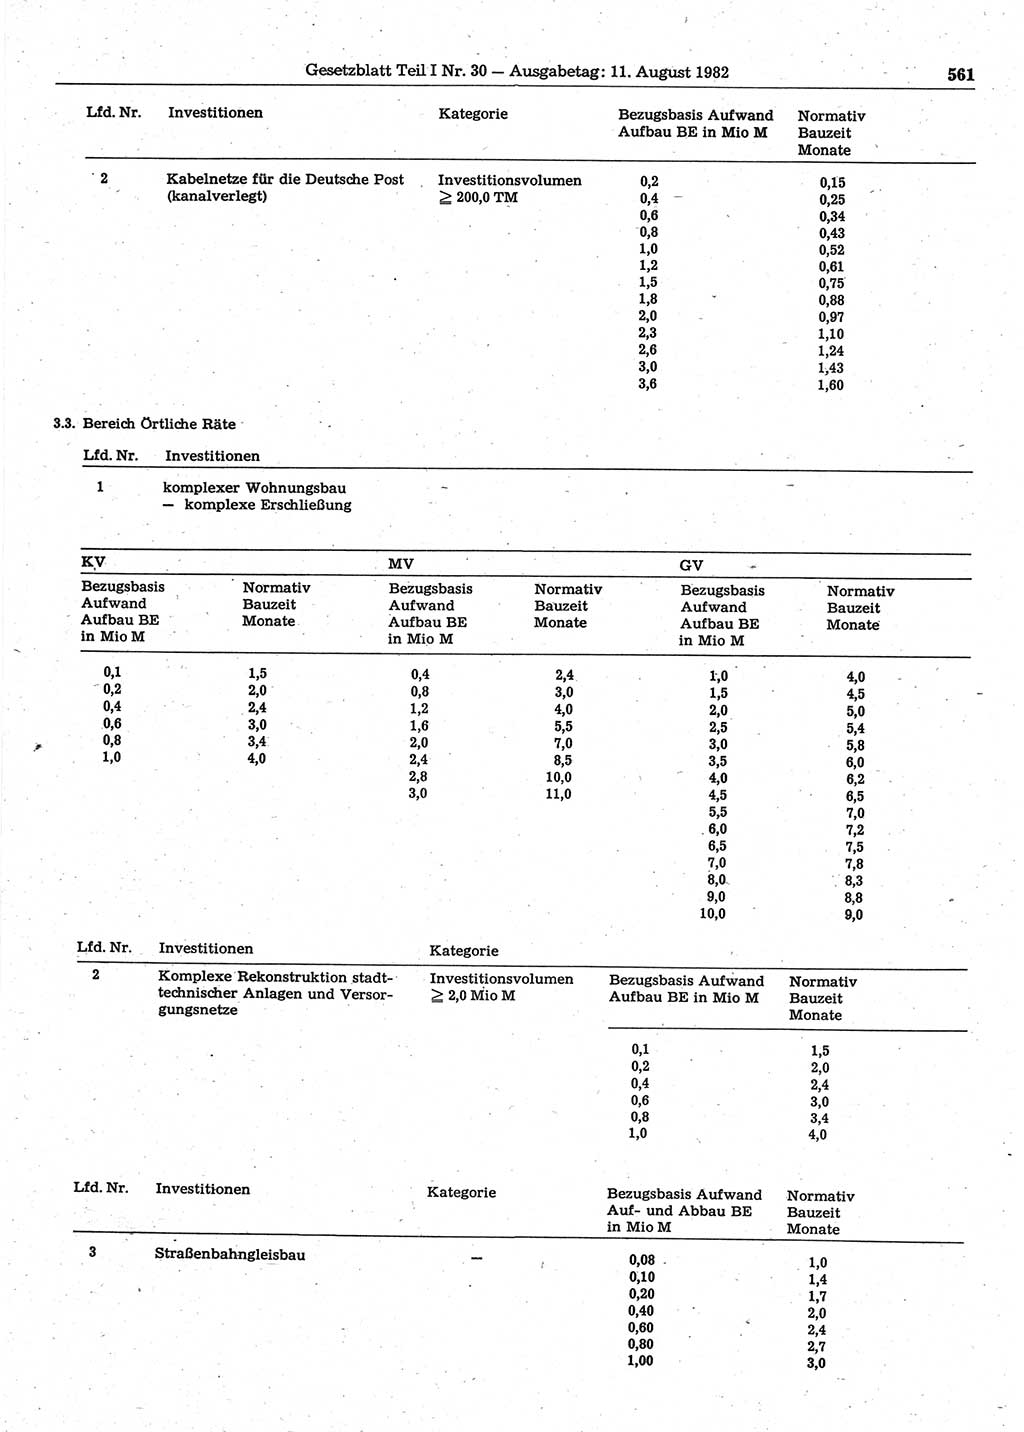 Gesetzblatt (GBl.) der Deutschen Demokratischen Republik (DDR) Teil Ⅰ 1982, Seite 561 (GBl. DDR Ⅰ 1982, S. 561)